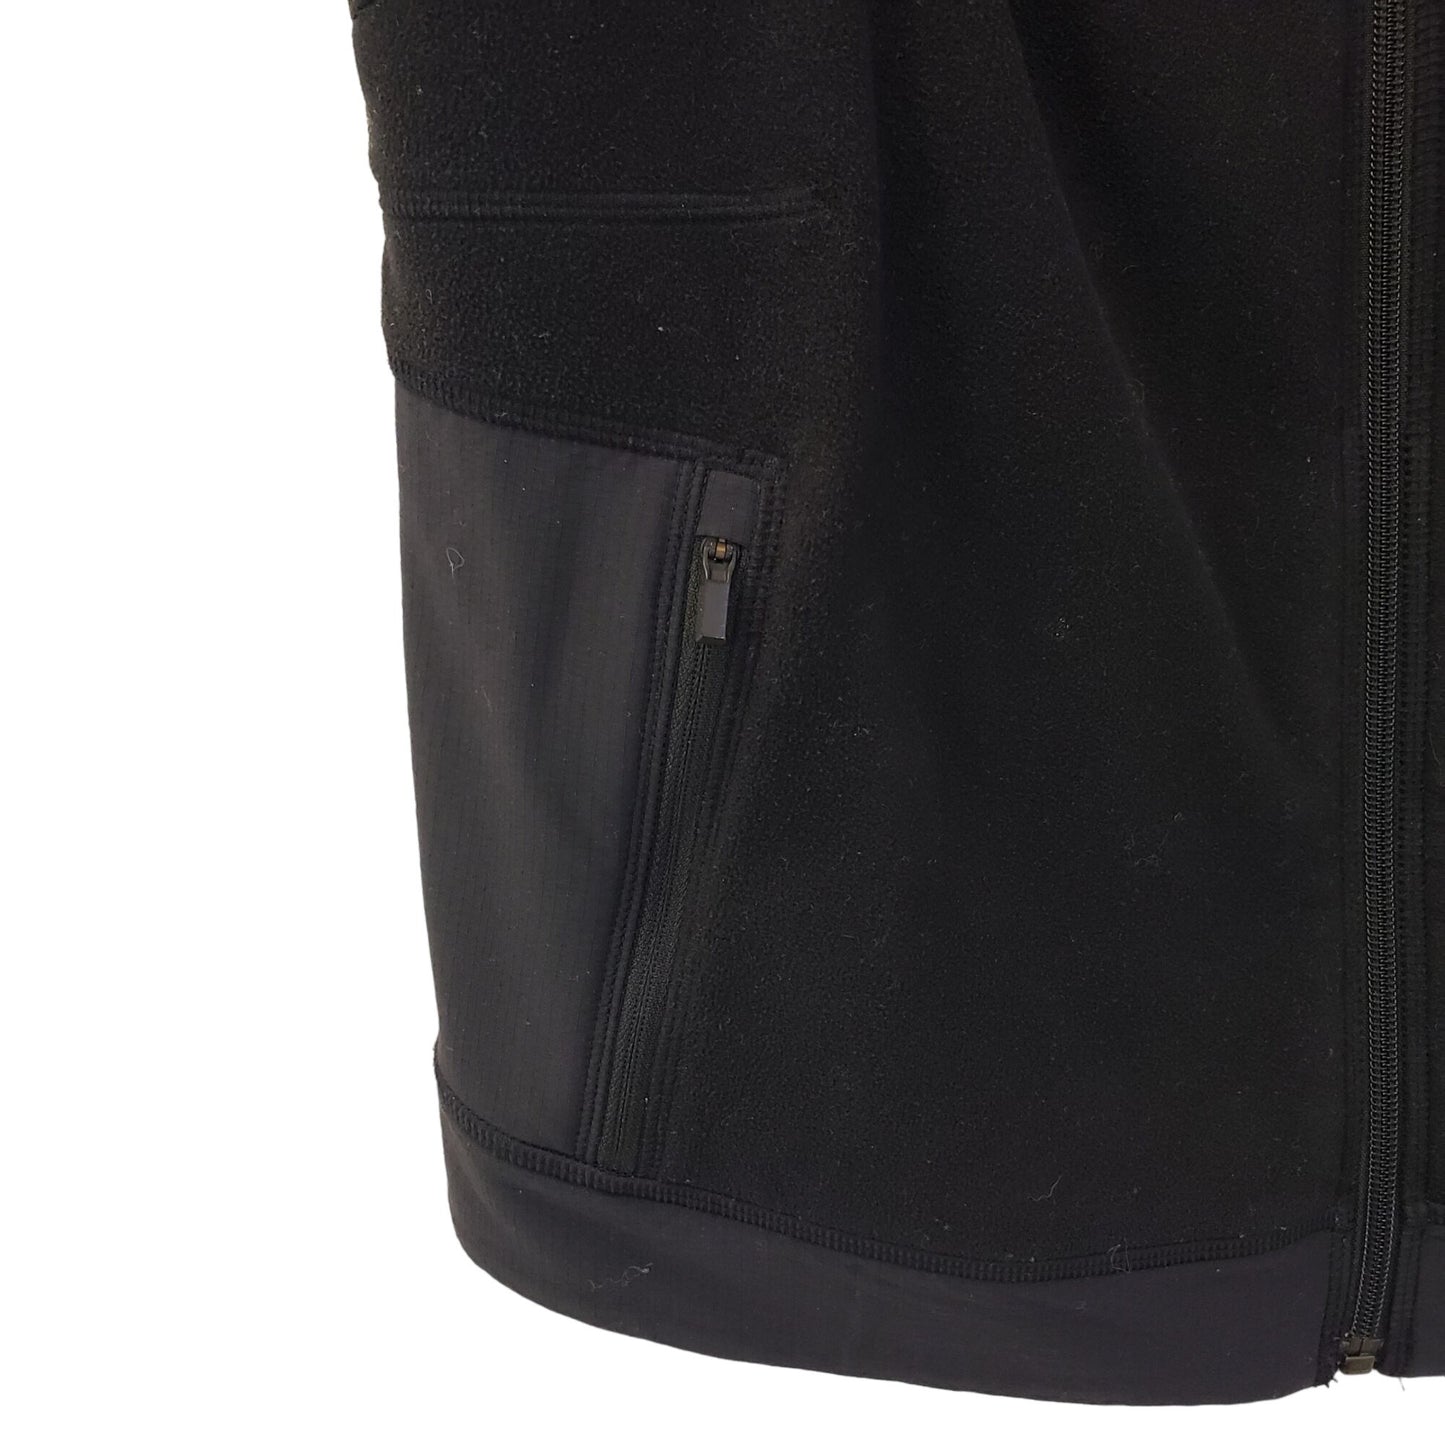 Athleta Full Zip Fleece Activewear Vest Size Medium (est)